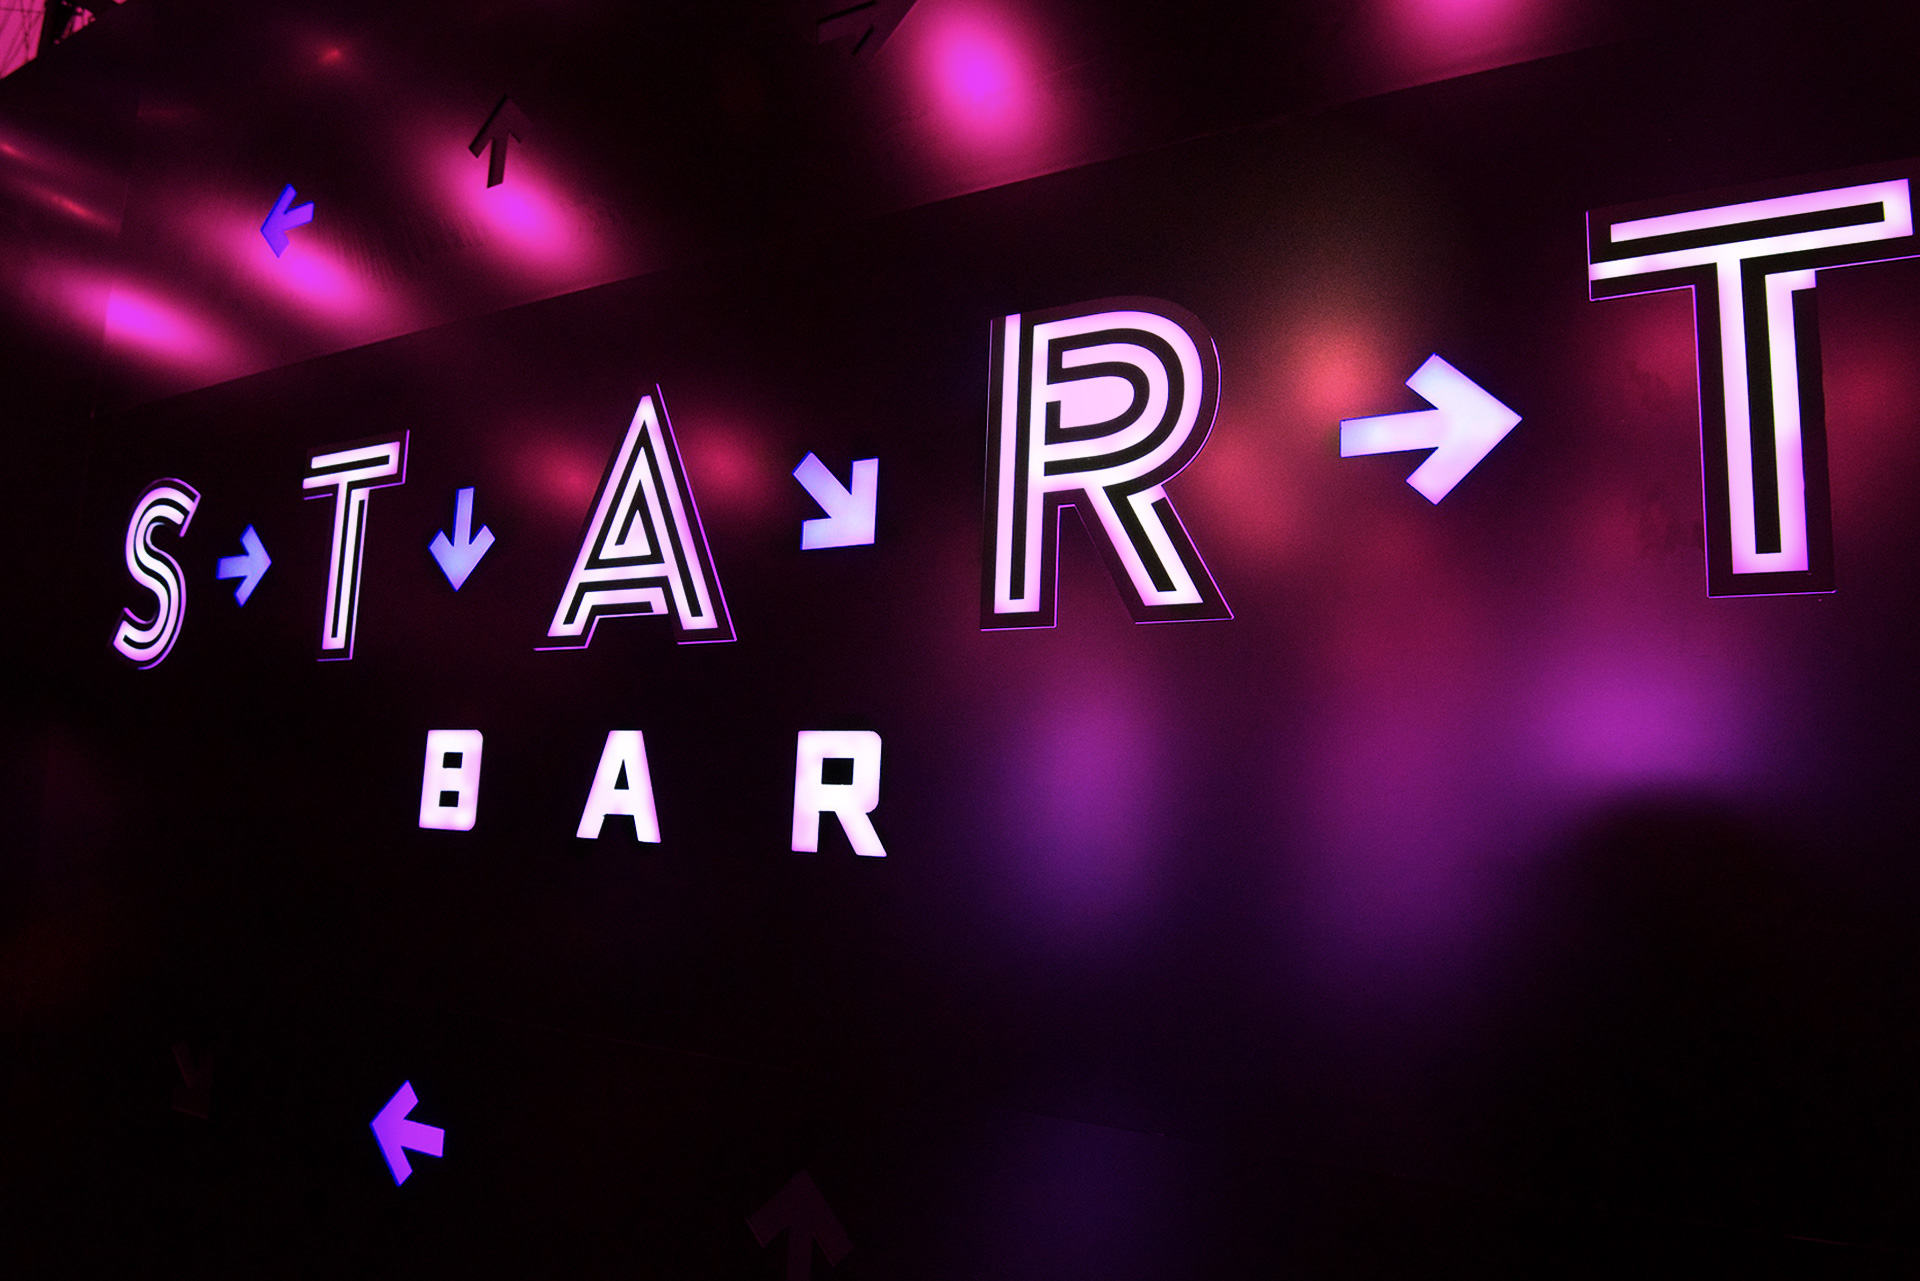 Start Bar Branding and Design